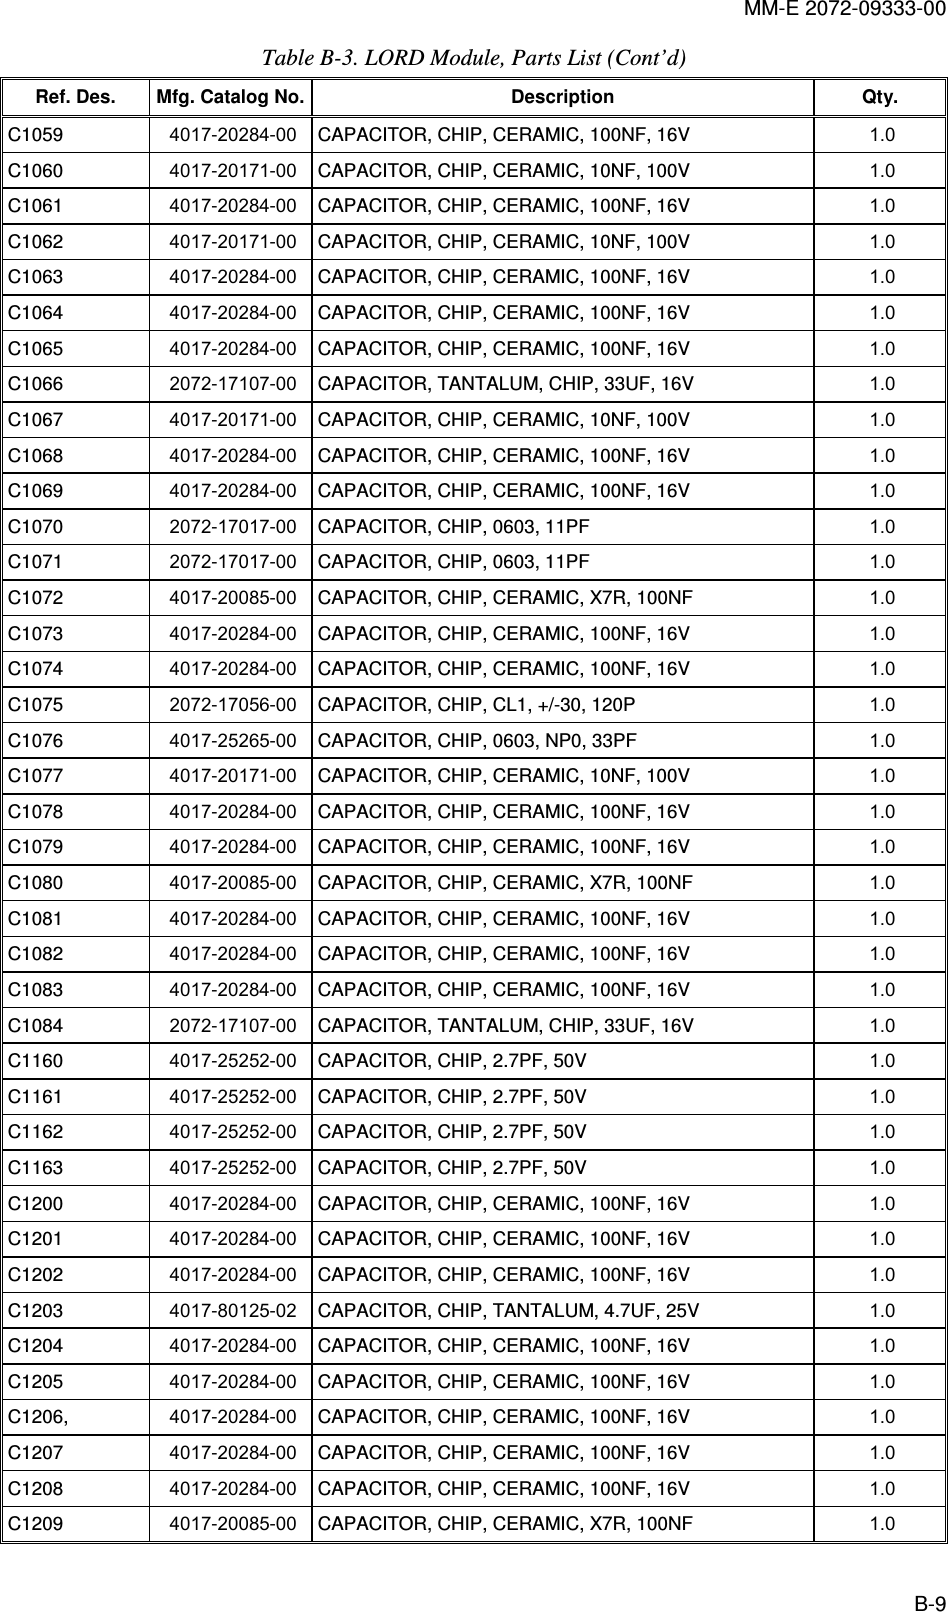 MM-E 2072-09333-00 B-9 Table  B-3. LORD Module, Parts List (Cont’d) Ref. Des.  Mfg. Catalog No. Description  Qty. C1059   4017-20284-00  CAPACITOR, CHIP, CERAMIC, 100NF, 16V  1.0   C1060   4017-20171-00  CAPACITOR, CHIP, CERAMIC, 10NF, 100V  1.0   C1061   4017-20284-00  CAPACITOR, CHIP, CERAMIC, 100NF, 16V  1.0   C1062   4017-20171-00  CAPACITOR, CHIP, CERAMIC, 10NF, 100V  1.0   C1063   4017-20284-00  CAPACITOR, CHIP, CERAMIC, 100NF, 16V  1.0   C1064   4017-20284-00  CAPACITOR, CHIP, CERAMIC, 100NF, 16V  1.0   C1065   4017-20284-00  CAPACITOR, CHIP, CERAMIC, 100NF, 16V  1.0   C1066   2072-17107-00  CAPACITOR, TANTALUM, CHIP, 33UF, 16V  1.0   C1067   4017-20171-00  CAPACITOR, CHIP, CERAMIC, 10NF, 100V  1.0   C1068   4017-20284-00  CAPACITOR, CHIP, CERAMIC, 100NF, 16V  1.0   C1069   4017-20284-00  CAPACITOR, CHIP, CERAMIC, 100NF, 16V  1.0   C1070   2072-17017-00  CAPACITOR, CHIP, 0603, 11PF  1.0   C1071   2072-17017-00  CAPACITOR, CHIP, 0603, 11PF  1.0   C1072   4017-20085-00  CAPACITOR, CHIP, CERAMIC, X7R, 100NF  1.0   C1073   4017-20284-00  CAPACITOR, CHIP, CERAMIC, 100NF, 16V  1.0   C1074   4017-20284-00  CAPACITOR, CHIP, CERAMIC, 100NF, 16V  1.0   C1075   2072-17056-00  CAPACITOR, CHIP, CL1, +/-30, 120P  1.0   C1076   4017-25265-00  CAPACITOR, CHIP, 0603, NP0, 33PF  1.0   C1077   4017-20171-00  CAPACITOR, CHIP, CERAMIC, 10NF, 100V  1.0   C1078   4017-20284-00  CAPACITOR, CHIP, CERAMIC, 100NF, 16V  1.0   C1079   4017-20284-00  CAPACITOR, CHIP, CERAMIC, 100NF, 16V  1.0   C1080   4017-20085-00  CAPACITOR, CHIP, CERAMIC, X7R, 100NF  1.0   C1081   4017-20284-00  CAPACITOR, CHIP, CERAMIC, 100NF, 16V  1.0   C1082   4017-20284-00  CAPACITOR, CHIP, CERAMIC, 100NF, 16V  1.0   C1083   4017-20284-00  CAPACITOR, CHIP, CERAMIC, 100NF, 16V  1.0   C1084   2072-17107-00  CAPACITOR, TANTALUM, CHIP, 33UF, 16V  1.0   C1160   4017-25252-00  CAPACITOR, CHIP, 2.7PF, 50V  1.0   C1161   4017-25252-00  CAPACITOR, CHIP, 2.7PF, 50V  1.0   C1162   4017-25252-00  CAPACITOR, CHIP, 2.7PF, 50V  1.0   C1163   4017-25252-00  CAPACITOR, CHIP, 2.7PF, 50V  1.0   C1200   4017-20284-00  CAPACITOR, CHIP, CERAMIC, 100NF, 16V  1.0   C1201   4017-20284-00  CAPACITOR, CHIP, CERAMIC, 100NF, 16V  1.0   C1202   4017-20284-00  CAPACITOR, CHIP, CERAMIC, 100NF, 16V  1.0   C1203   4017-80125-02  CAPACITOR, CHIP, TANTALUM, 4.7UF, 25V  1.0   C1204   4017-20284-00  CAPACITOR, CHIP, CERAMIC, 100NF, 16V  1.0   C1205   4017-20284-00  CAPACITOR, CHIP, CERAMIC, 100NF, 16V  1.0   C1206,   4017-20284-00  CAPACITOR, CHIP, CERAMIC, 100NF, 16V  1.0   C1207   4017-20284-00  CAPACITOR, CHIP, CERAMIC, 100NF, 16V  1.0   C1208   4017-20284-00  CAPACITOR, CHIP, CERAMIC, 100NF, 16V  1.0   C1209   4017-20085-00  CAPACITOR, CHIP, CERAMIC, X7R, 100NF  1.0   